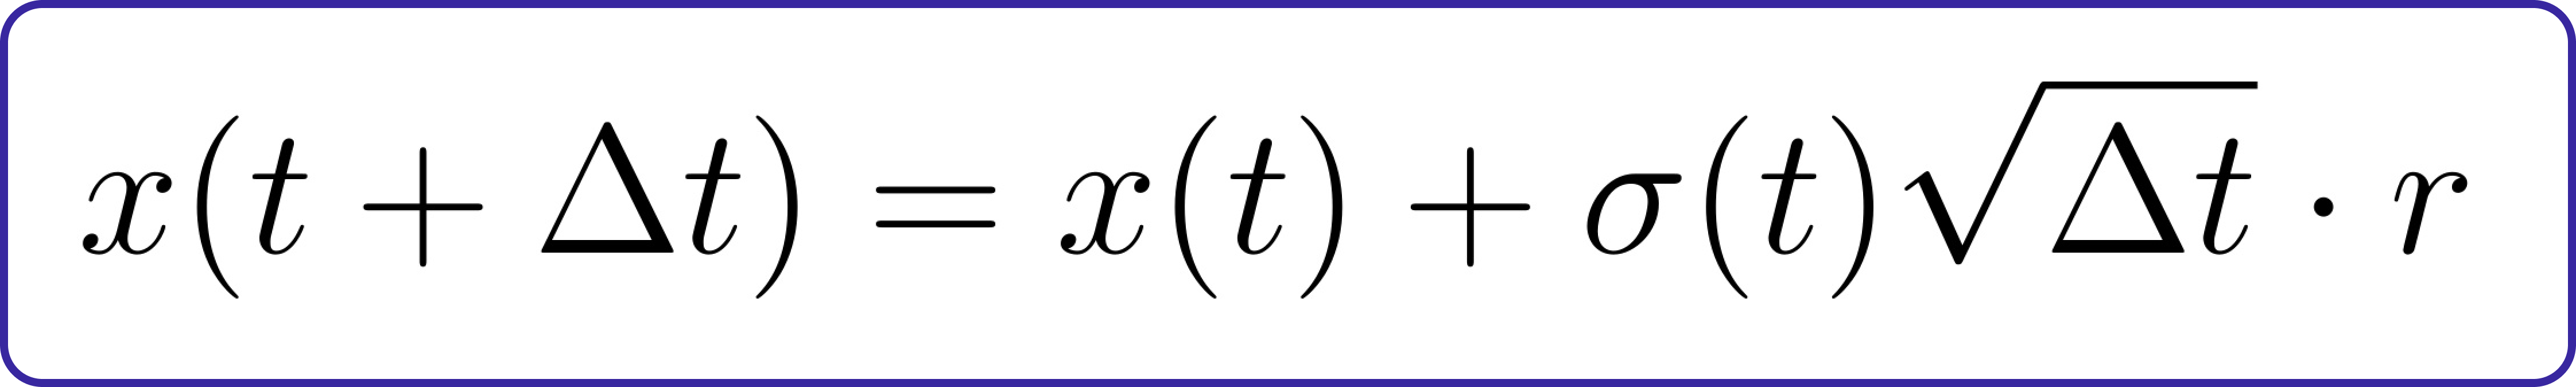 Forward Diffusion Equation